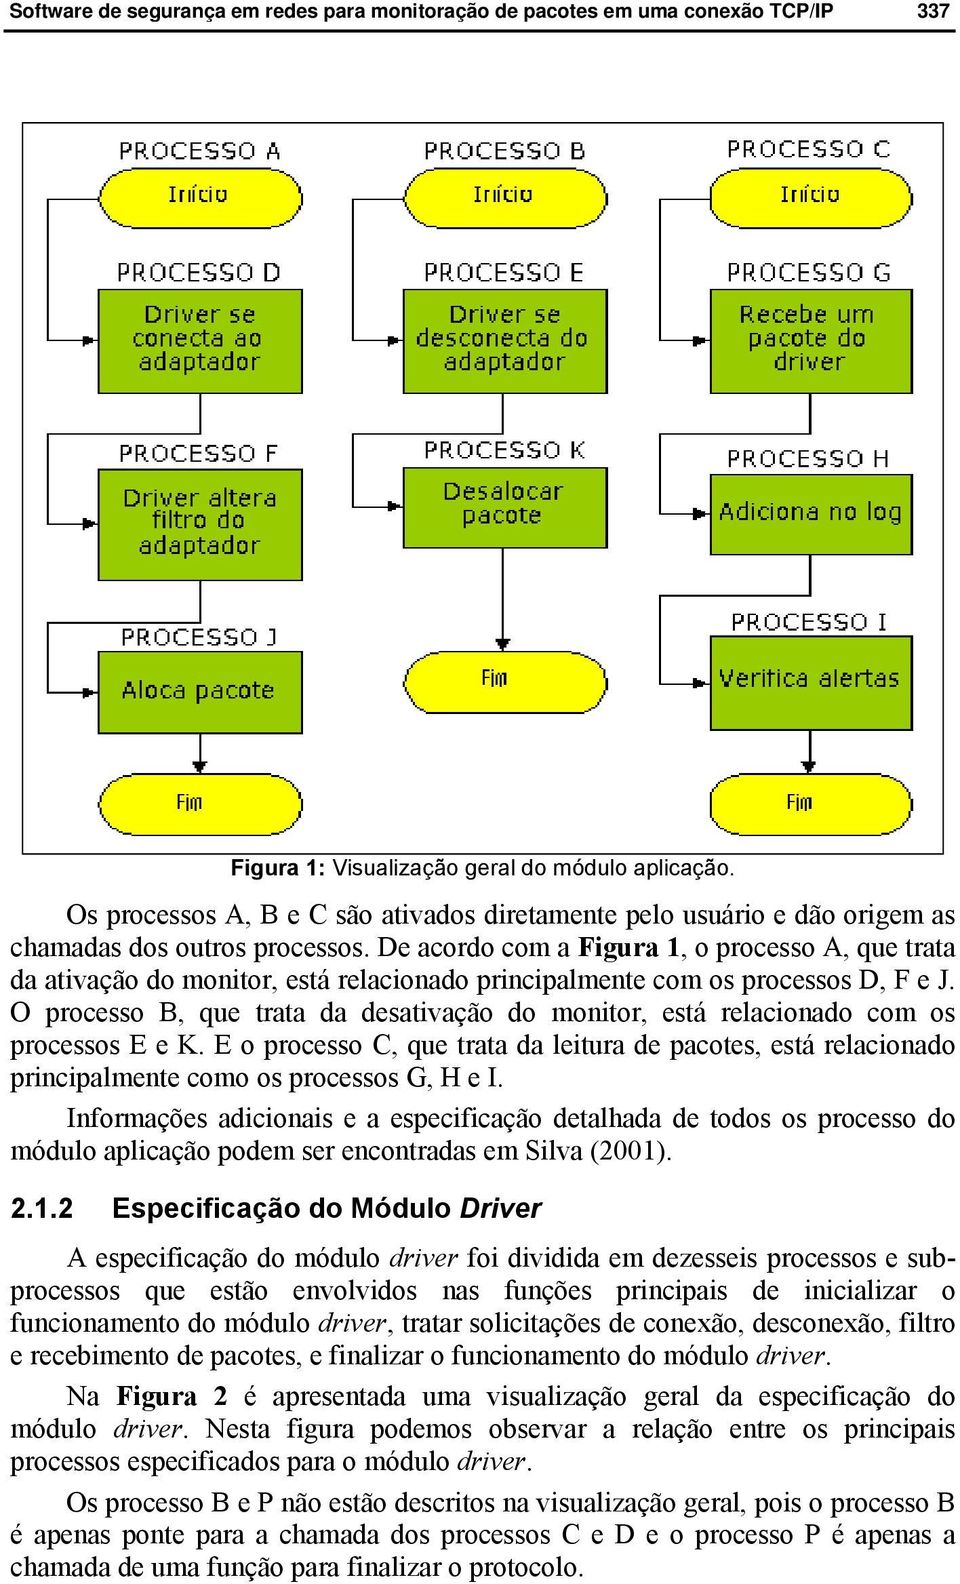 O processo B, que trata da desativação do monitor, está relacionado com os processos E e K. E o processo C, que trata da leitura de pacotes, está relacionado principalmente como os processos G, H e I.